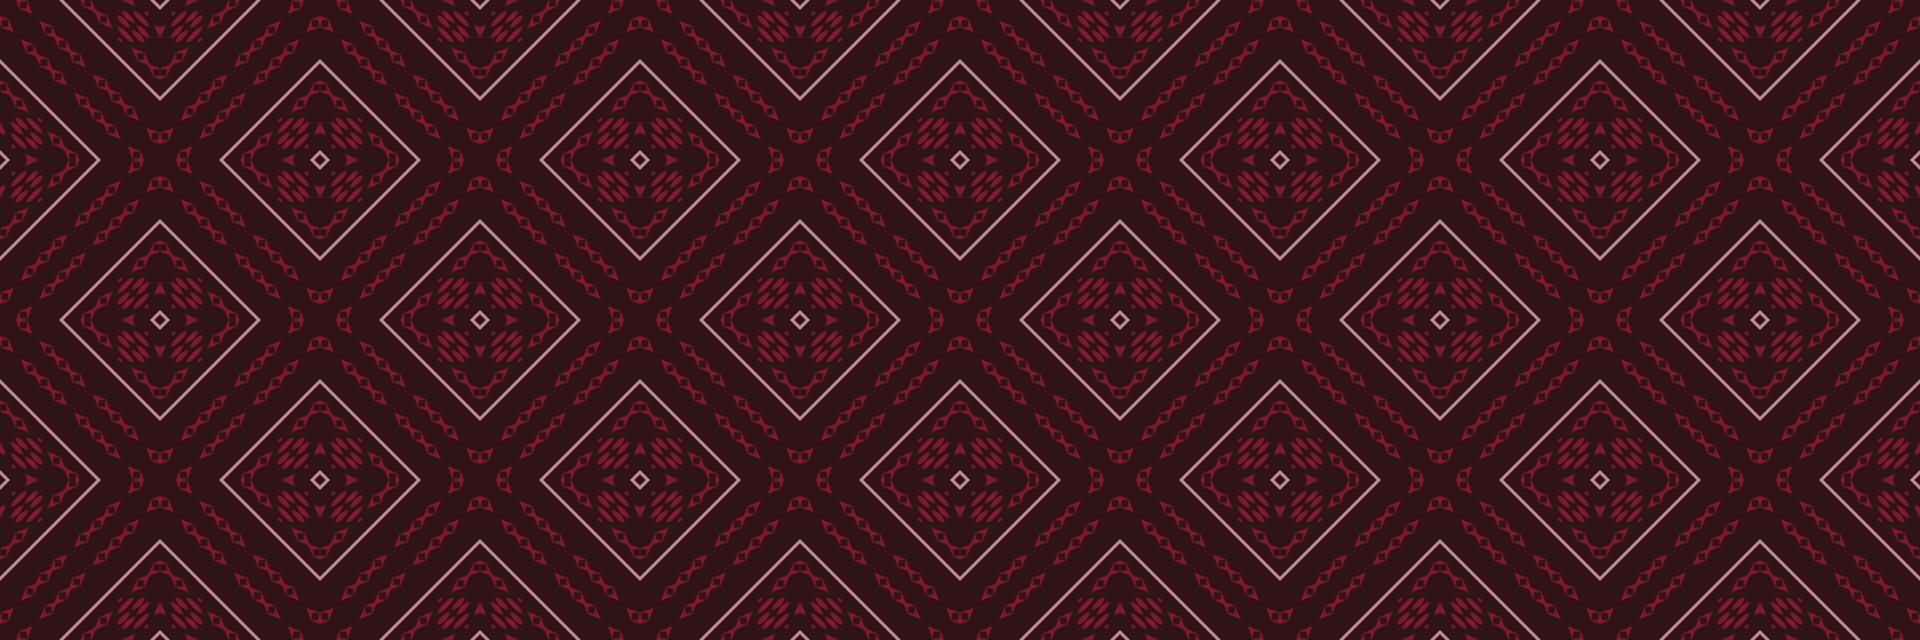 batik motivo textil ikat patrón sin costuras diseño de vector digital para imprimir saree kurti borneo borde de tela símbolos de pincel muestras de algodón